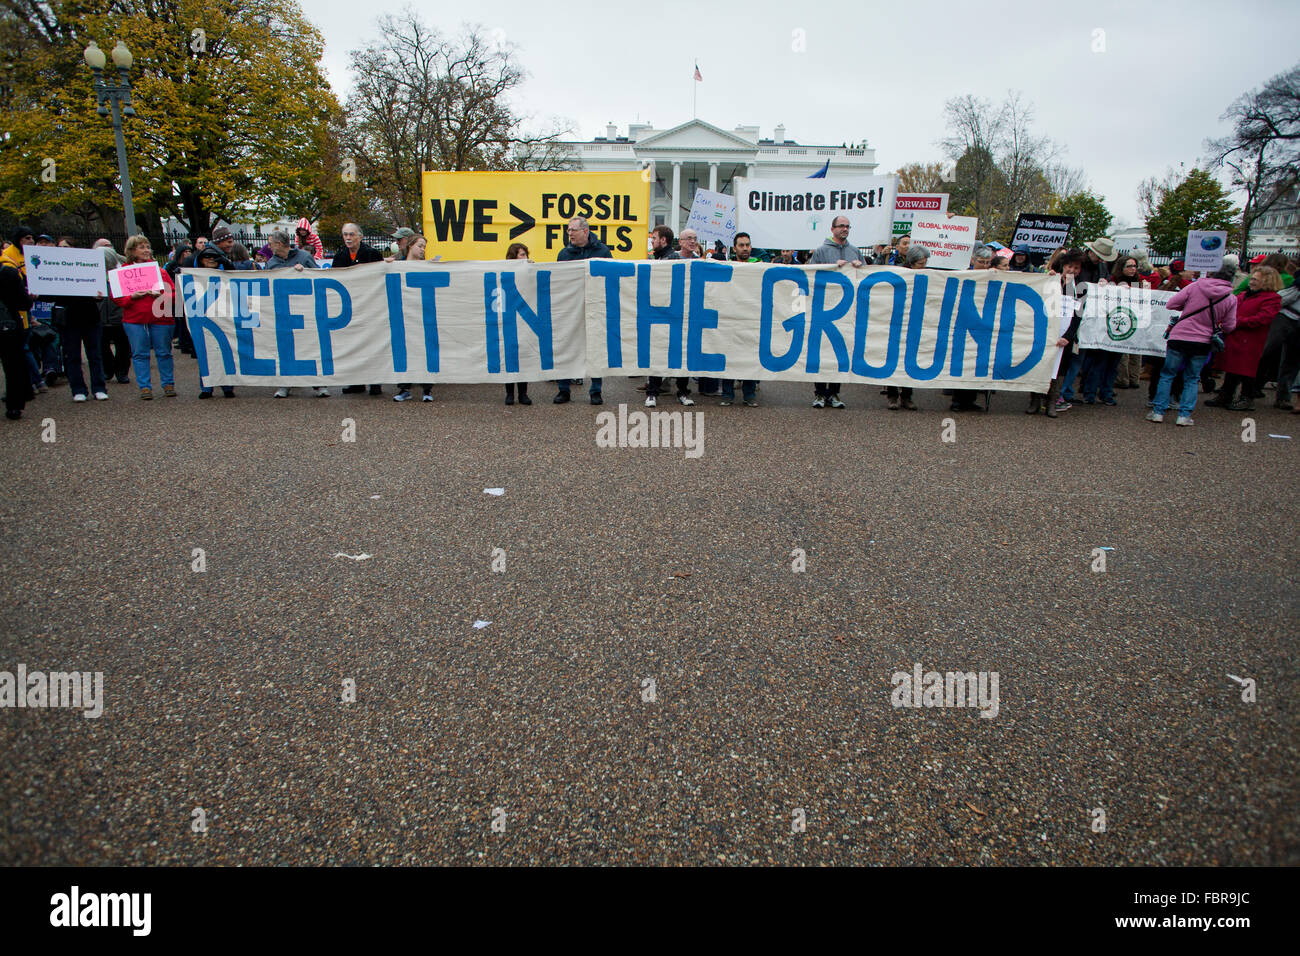 Novembre 21, 2015, Washington DC USA: attivisti ambientali protesta di fronte alla Casa Bianca (manifestanti tenendo premuto 'tenere in terra' banner) Foto Stock